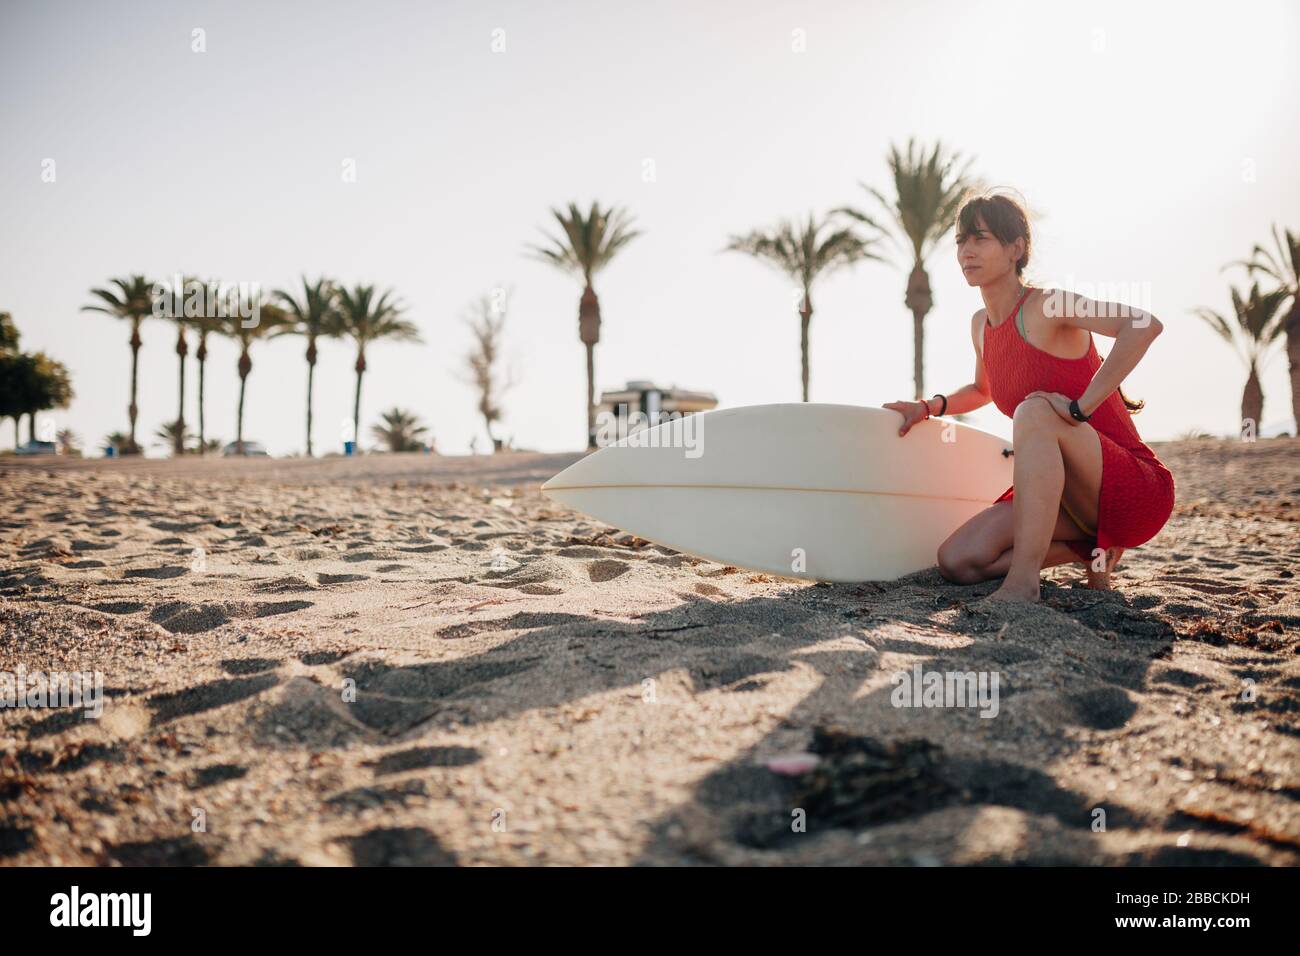 Mujer joven en la playa con su mesa de surf esperando en la arena Foto de stock